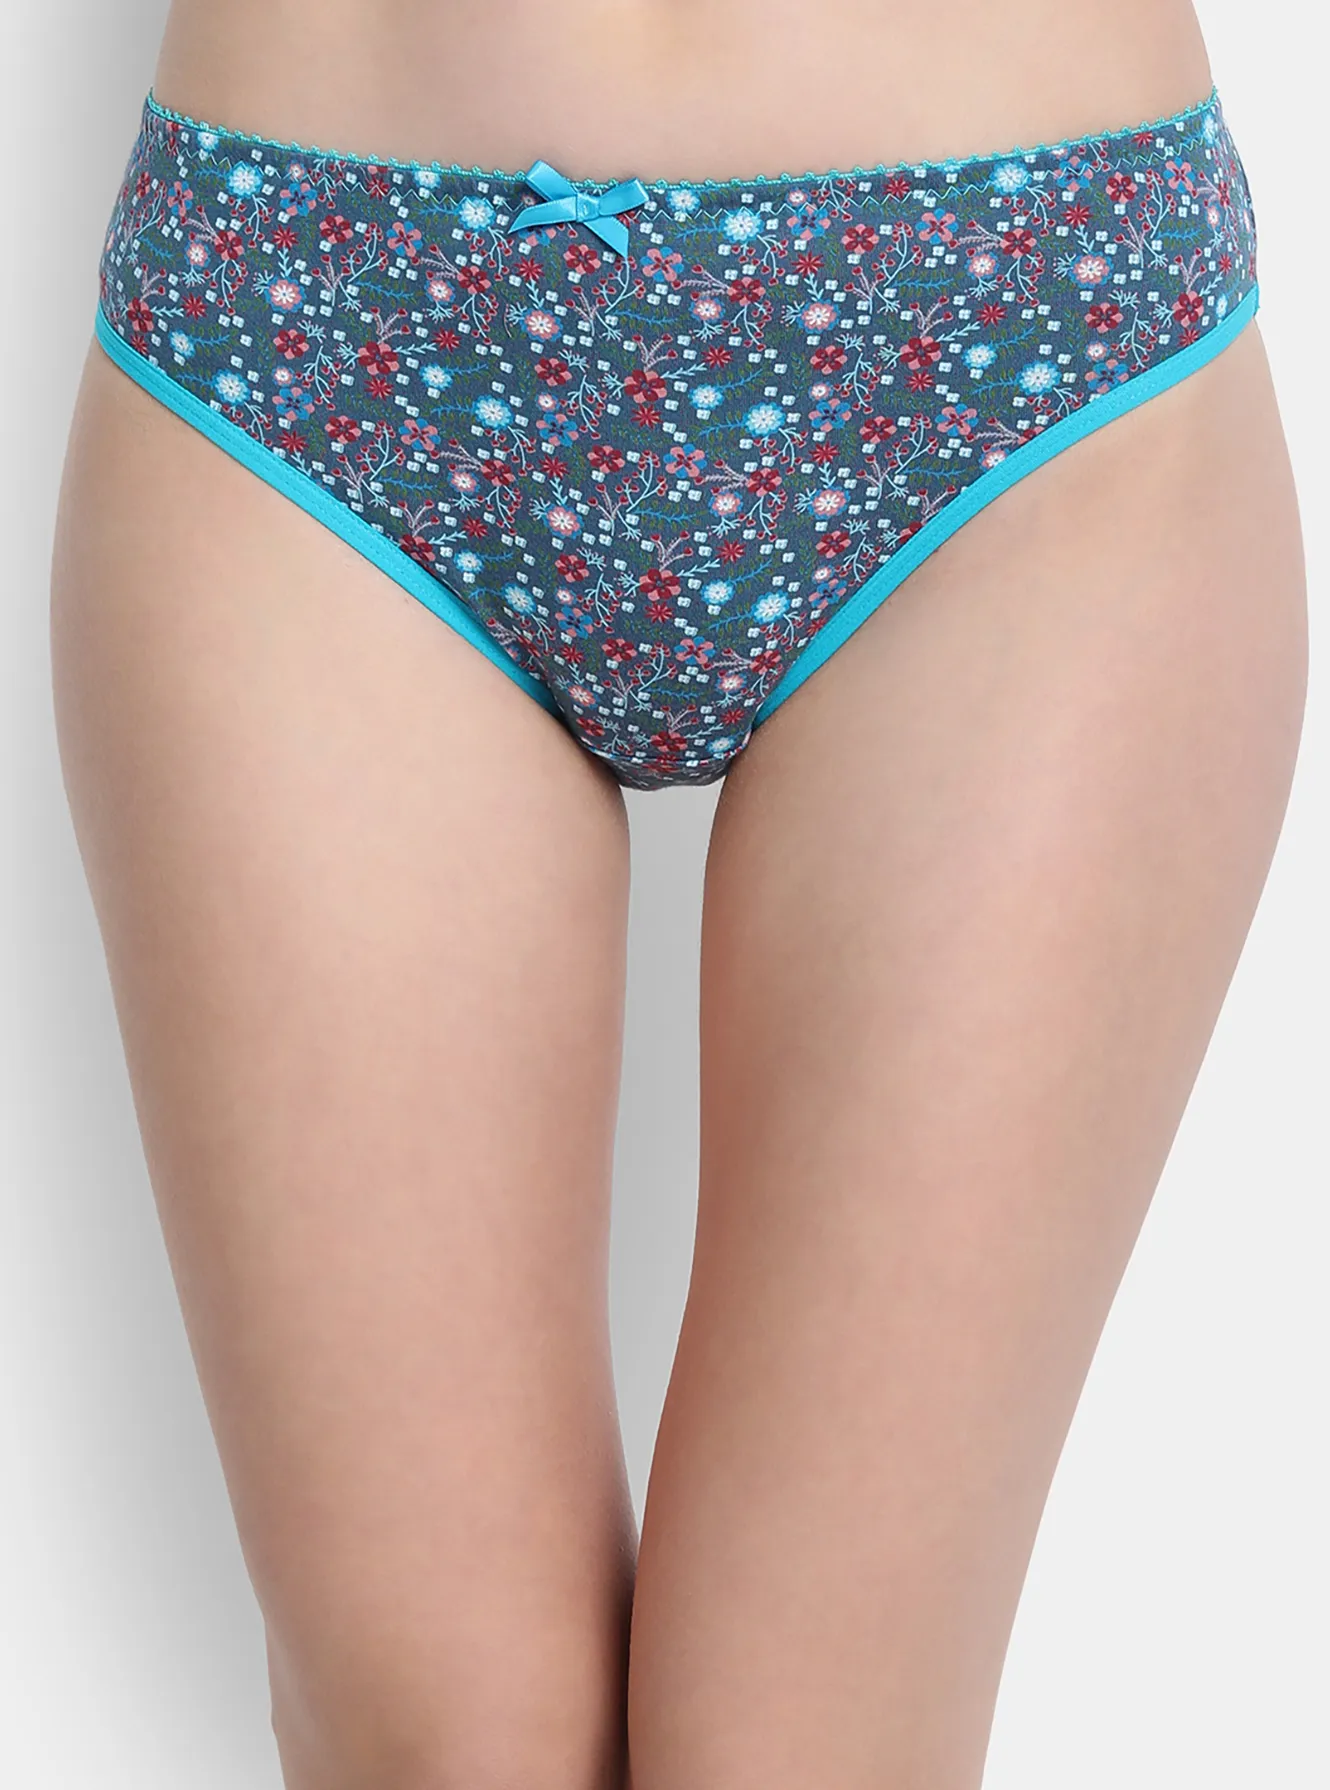 Bikini Panties with Brand Print